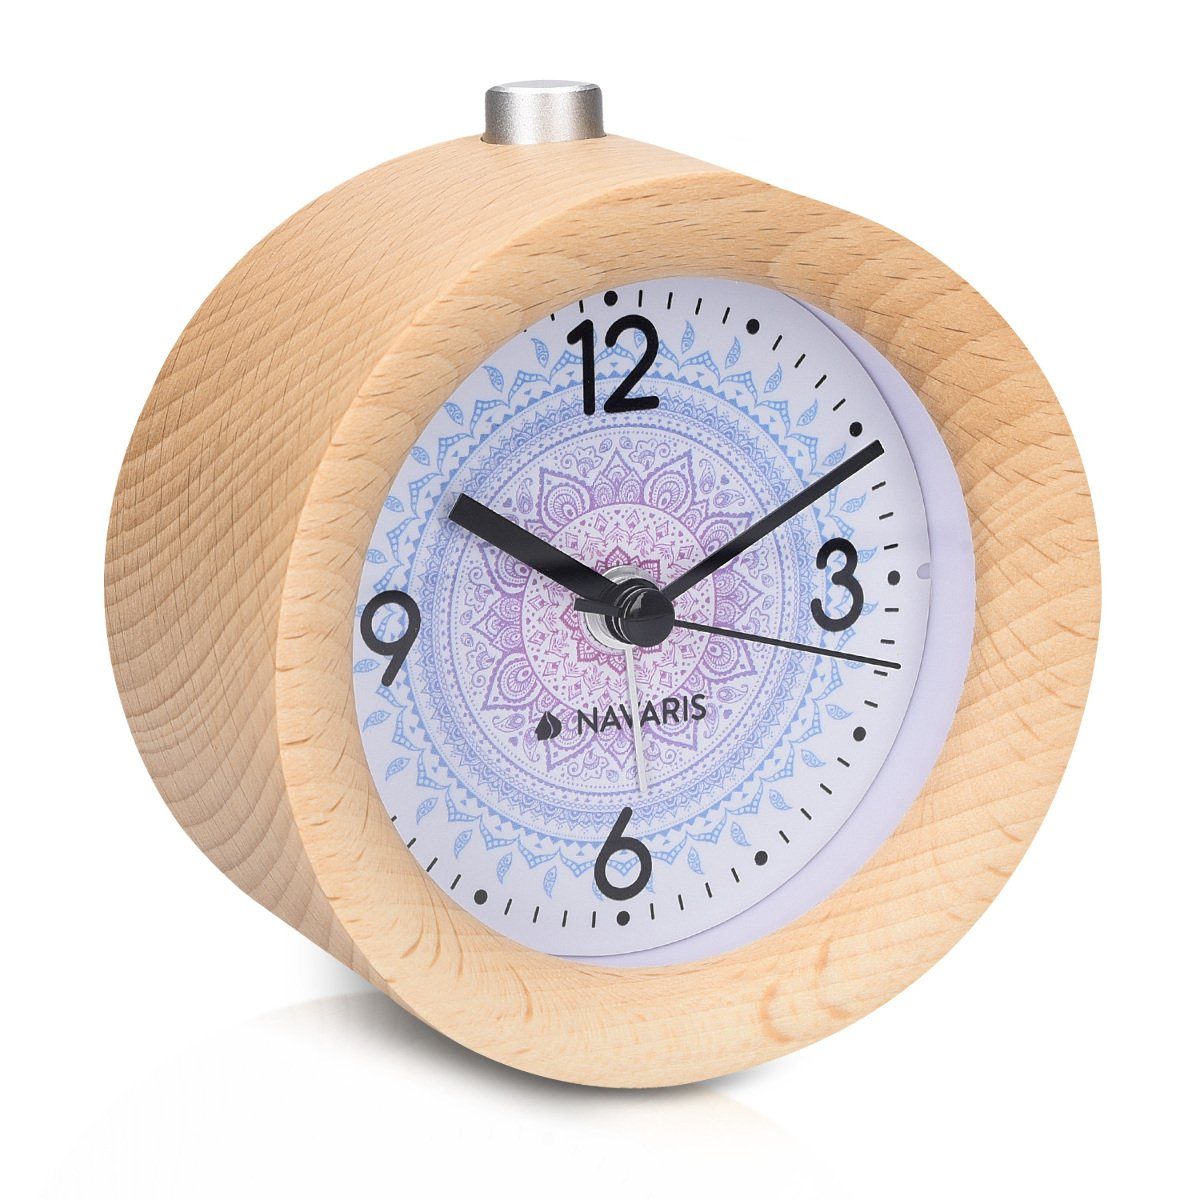 mit Reisewecker Navaris Wecker Rund, Uhr Holz mit Analog Snooze, Design Retro